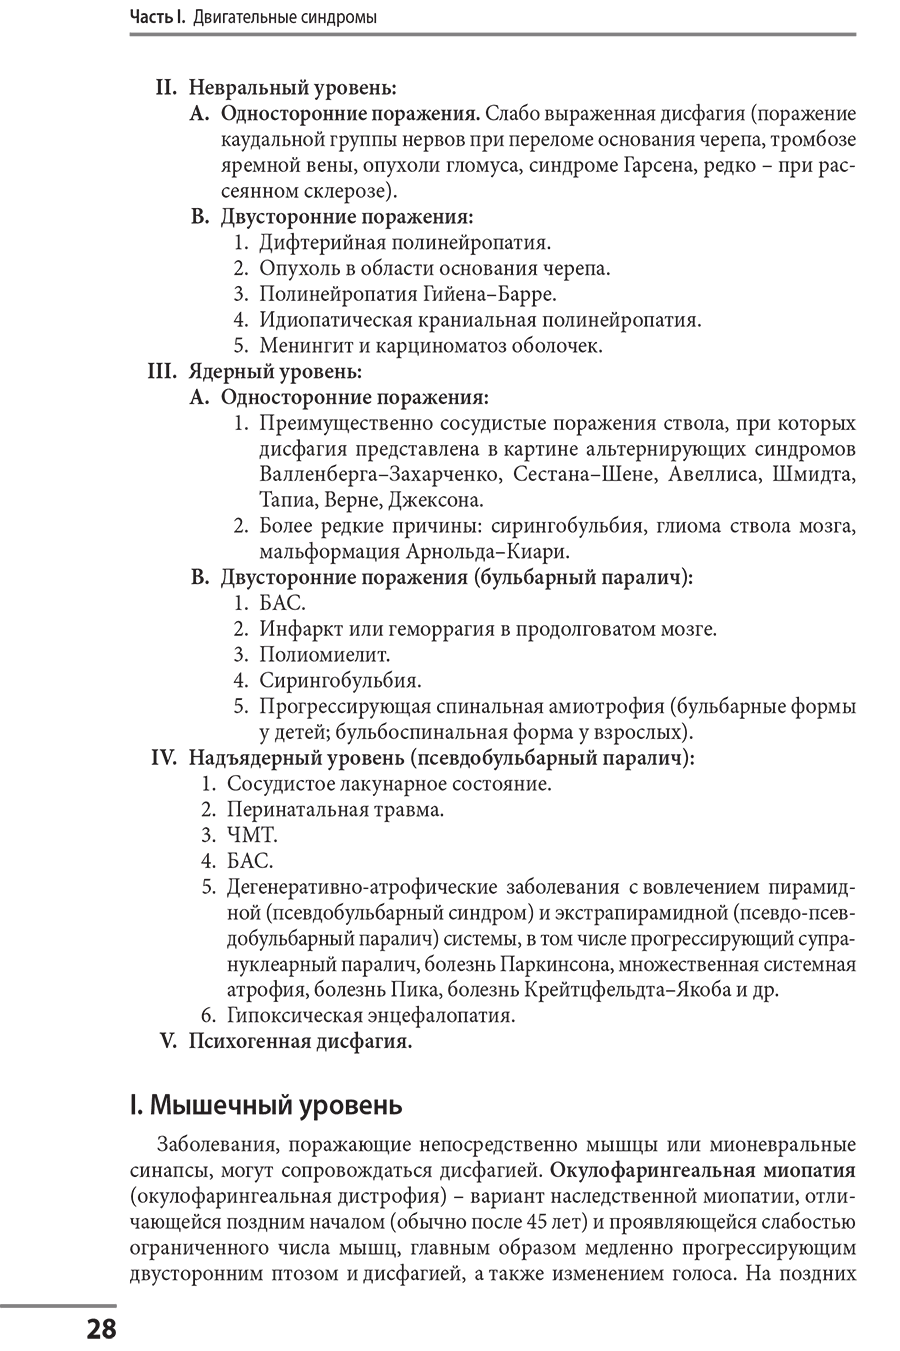 Пример страницы из книги "Клинические синдромы в неврологии"